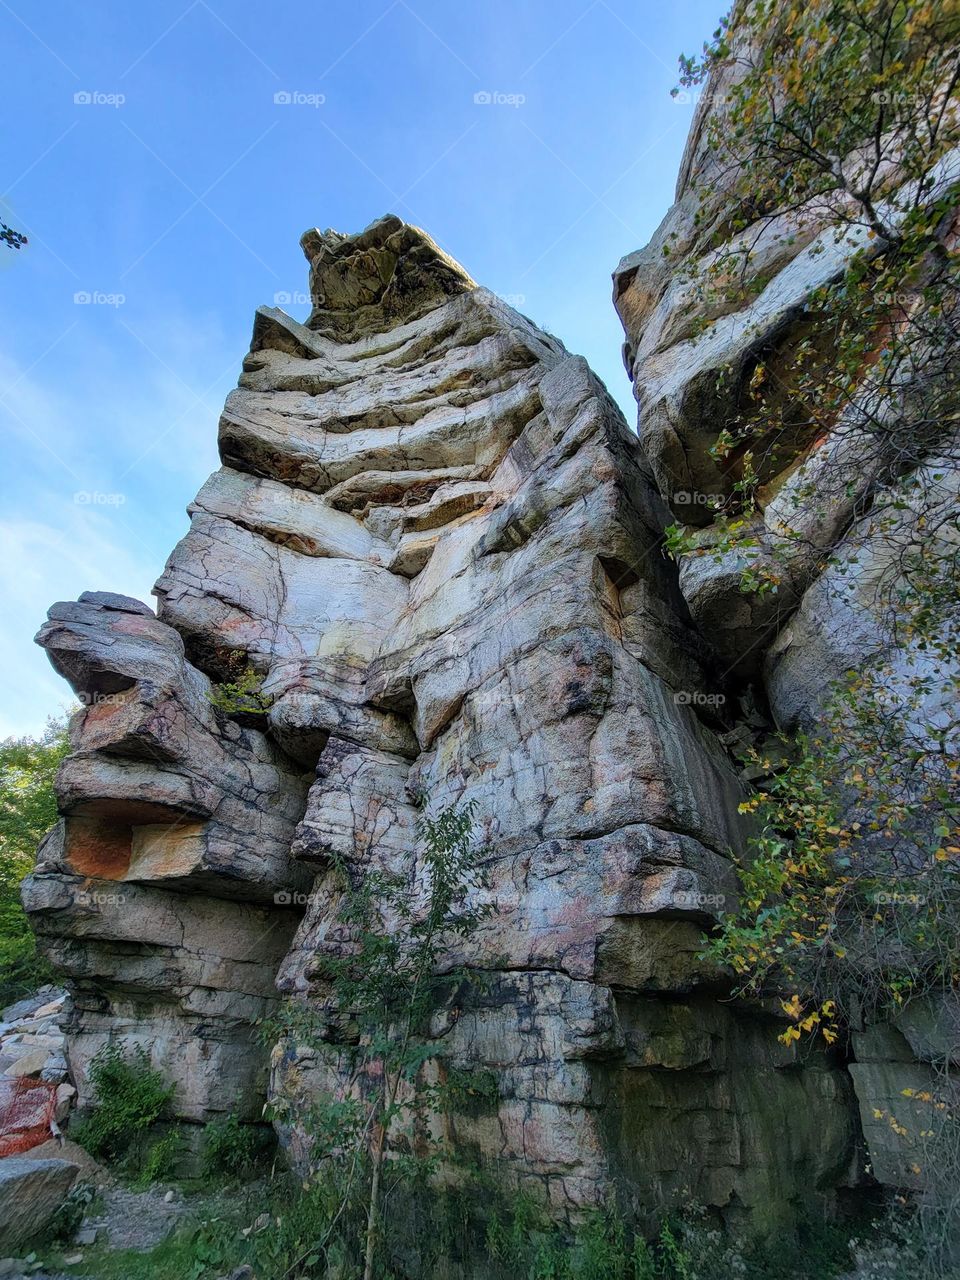 Giant rock 